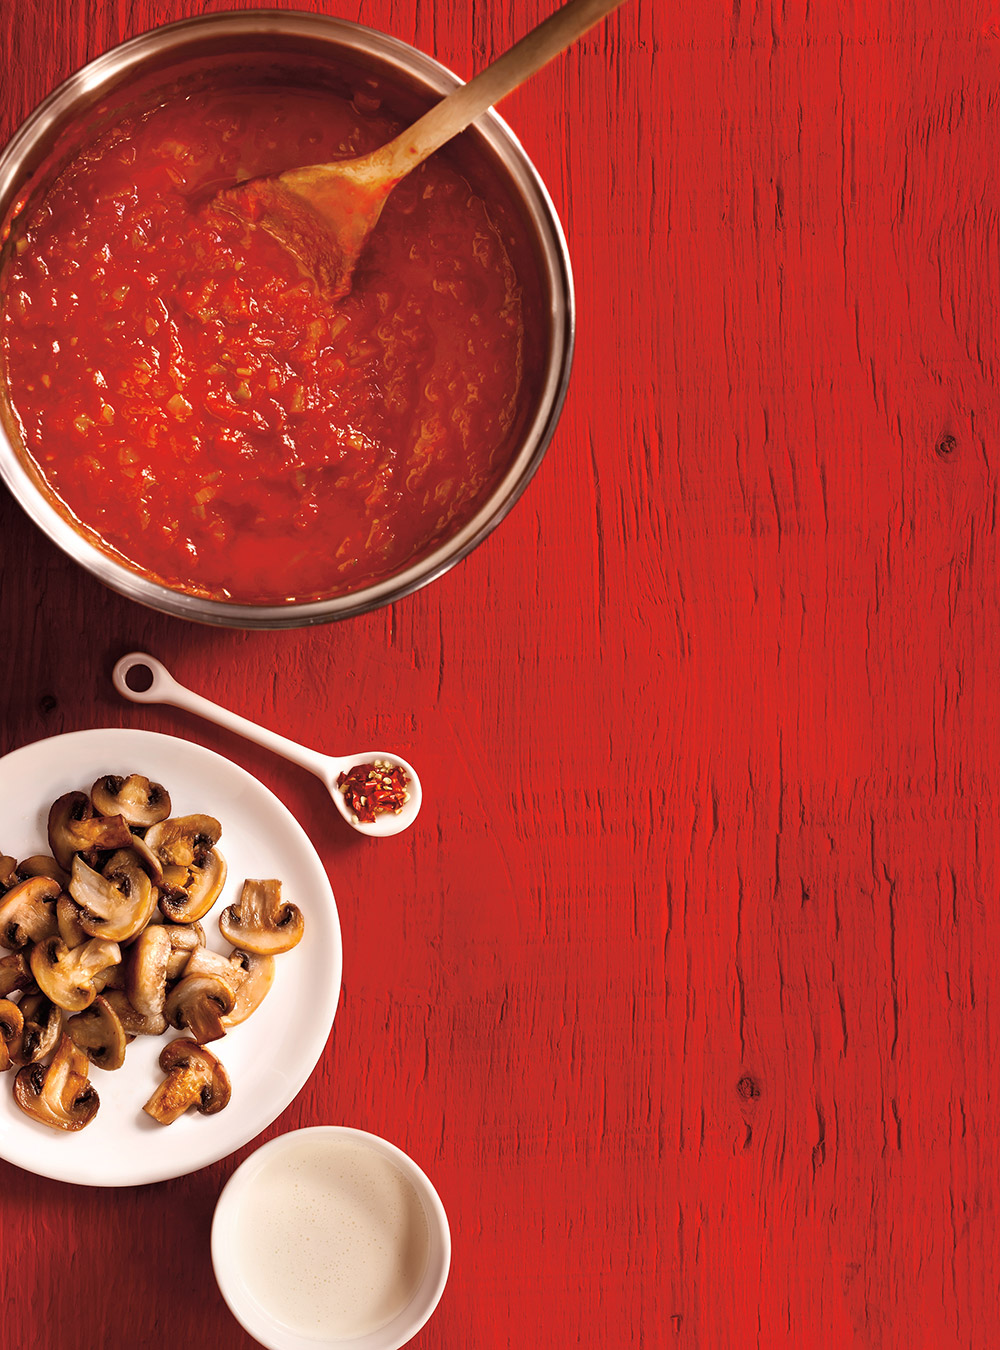 Sauce tomate : Recette de Sauce tomate